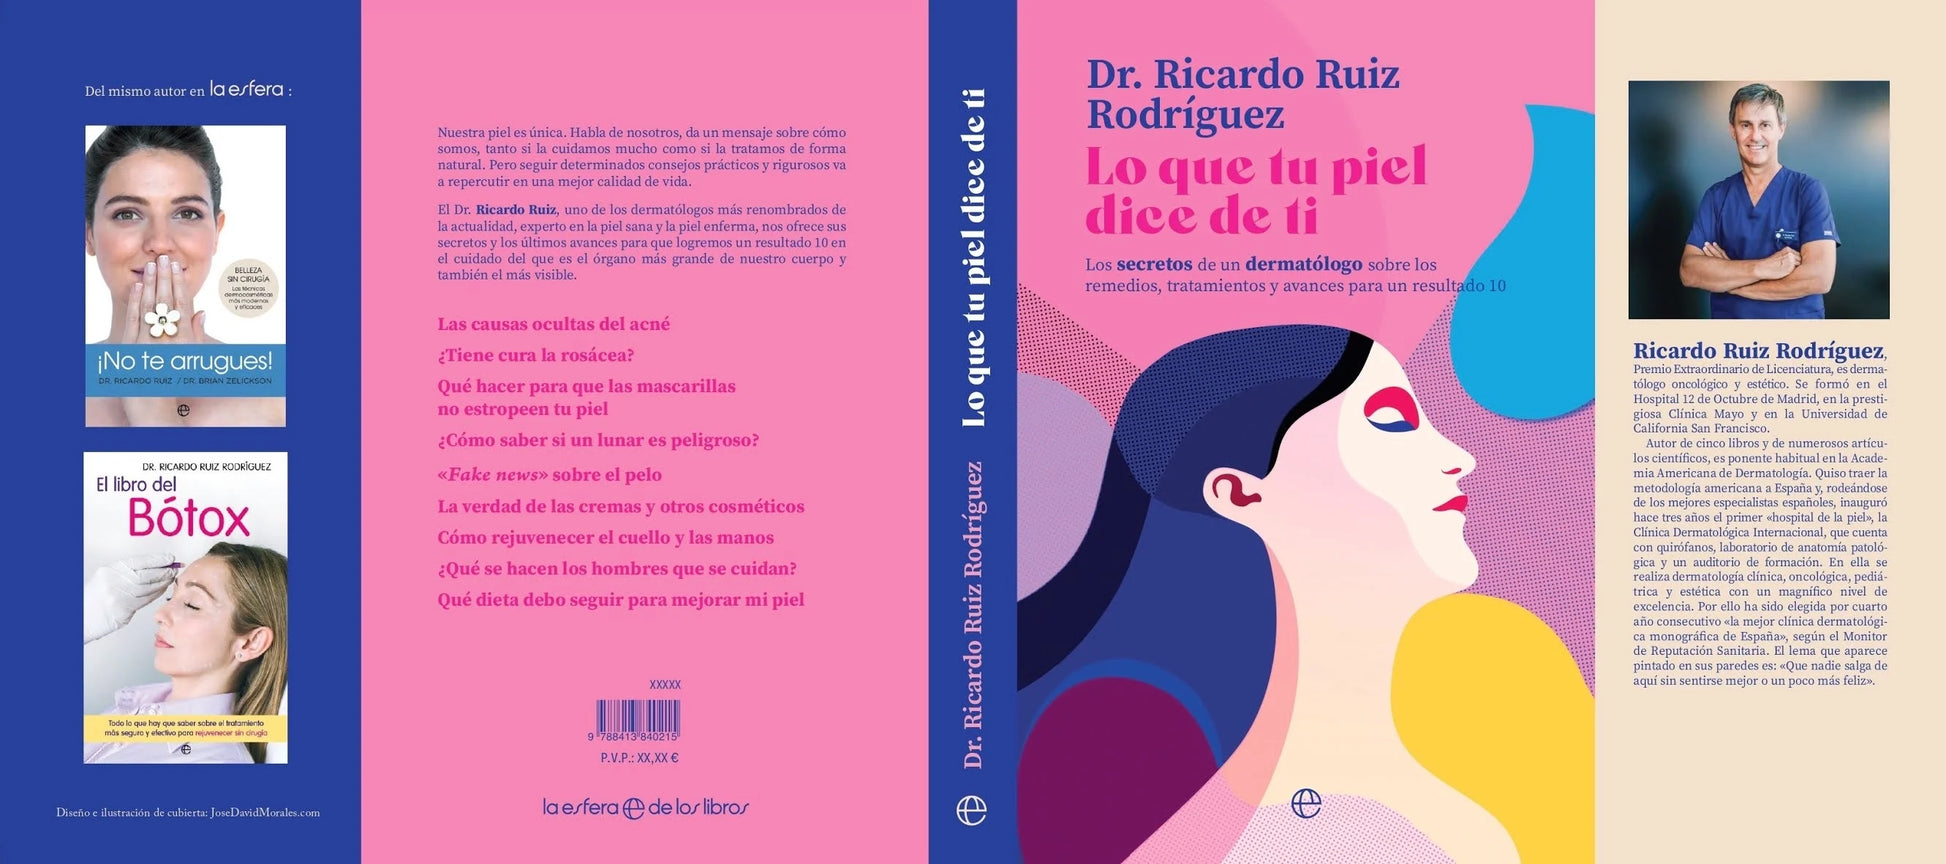 Dr. Ricardo Ruiz